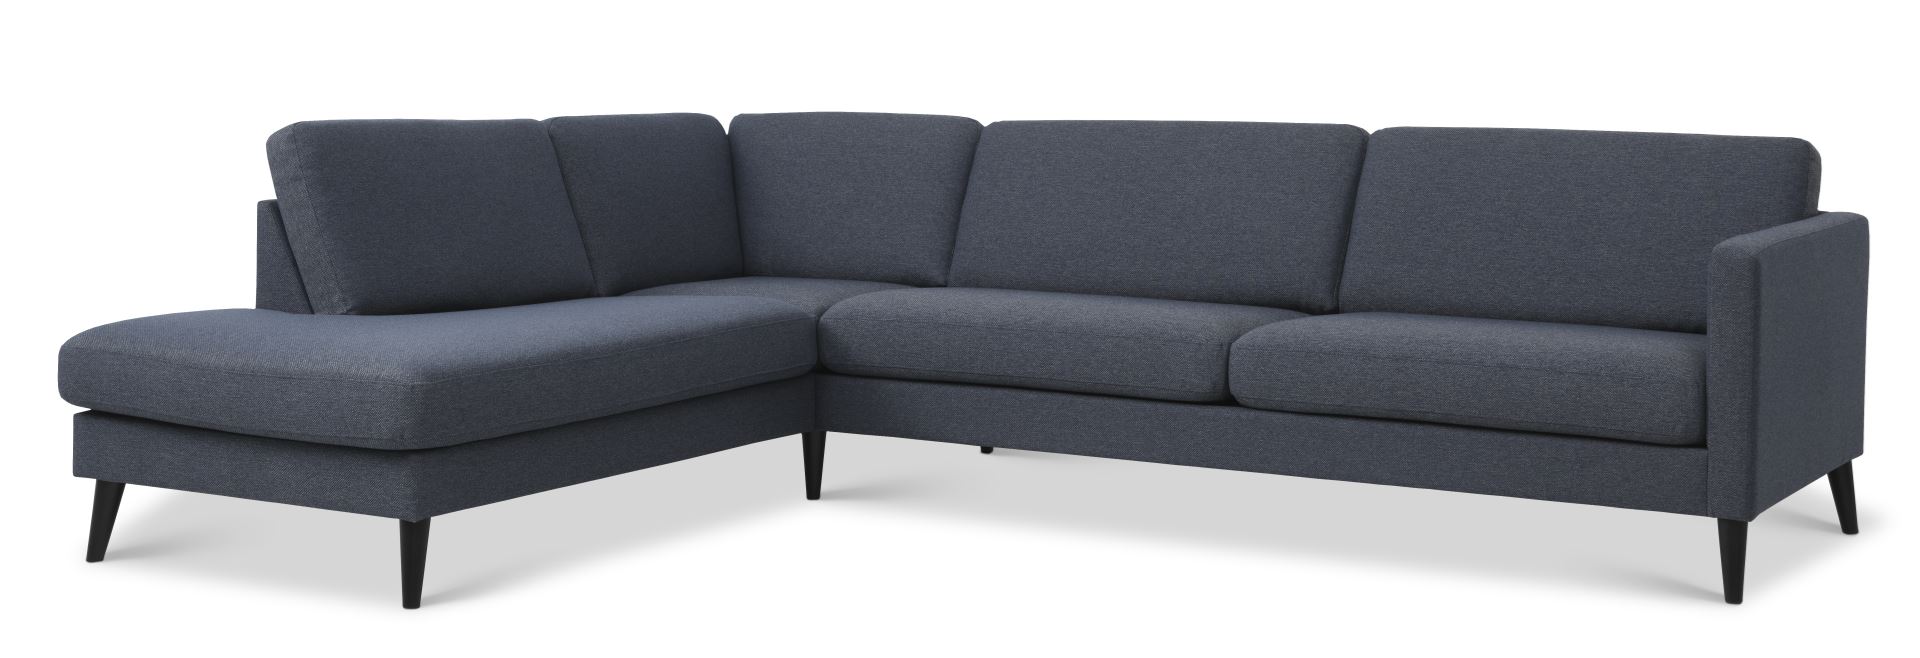 Ask sæt 60 stor OE sofa, m. venstre chaiselong - navy blå polyester stof og sort træ